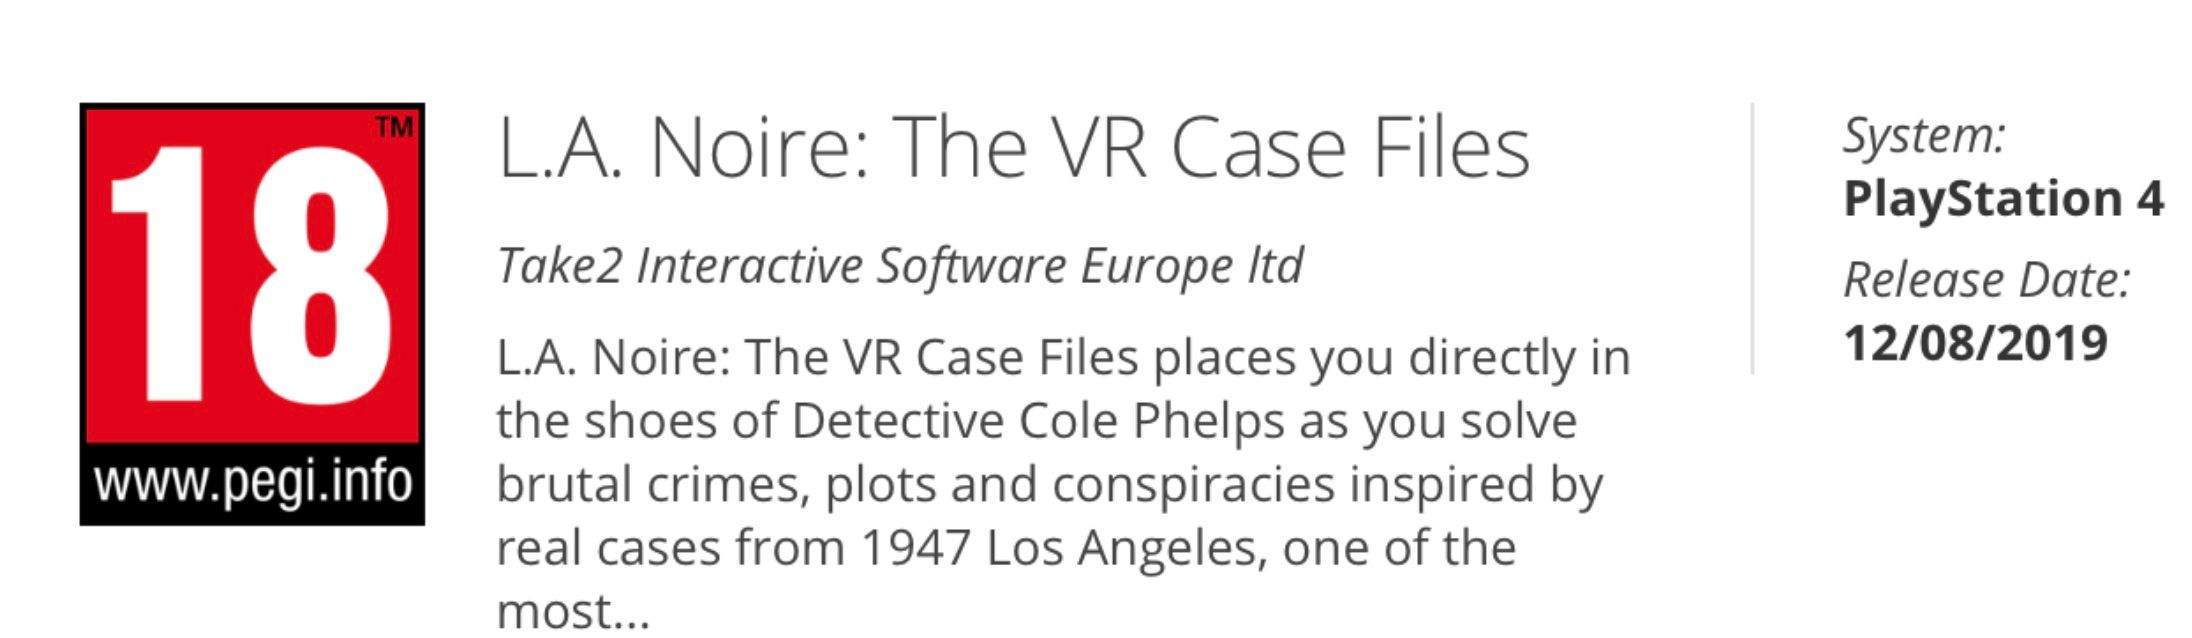 LA Noire The VR case files.